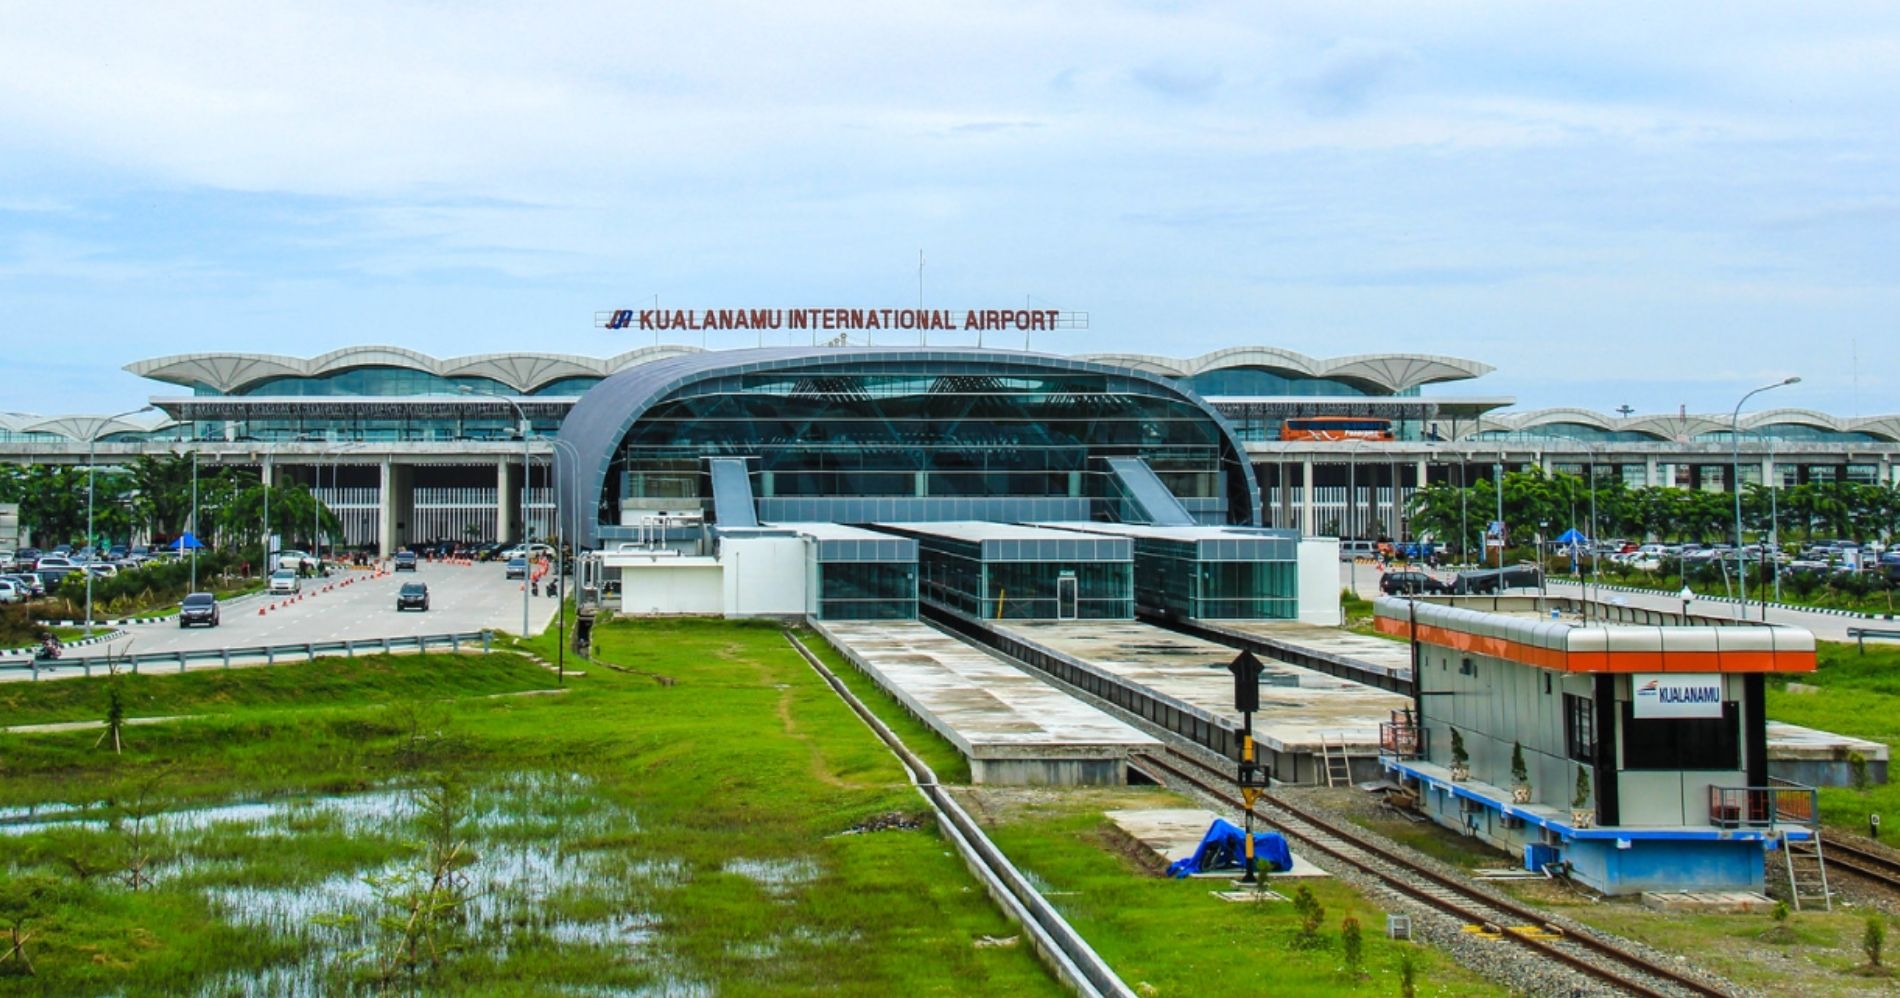 Bandara Internasional Kualanamu Illustration Web Bisnis Muda - Image: Flickr